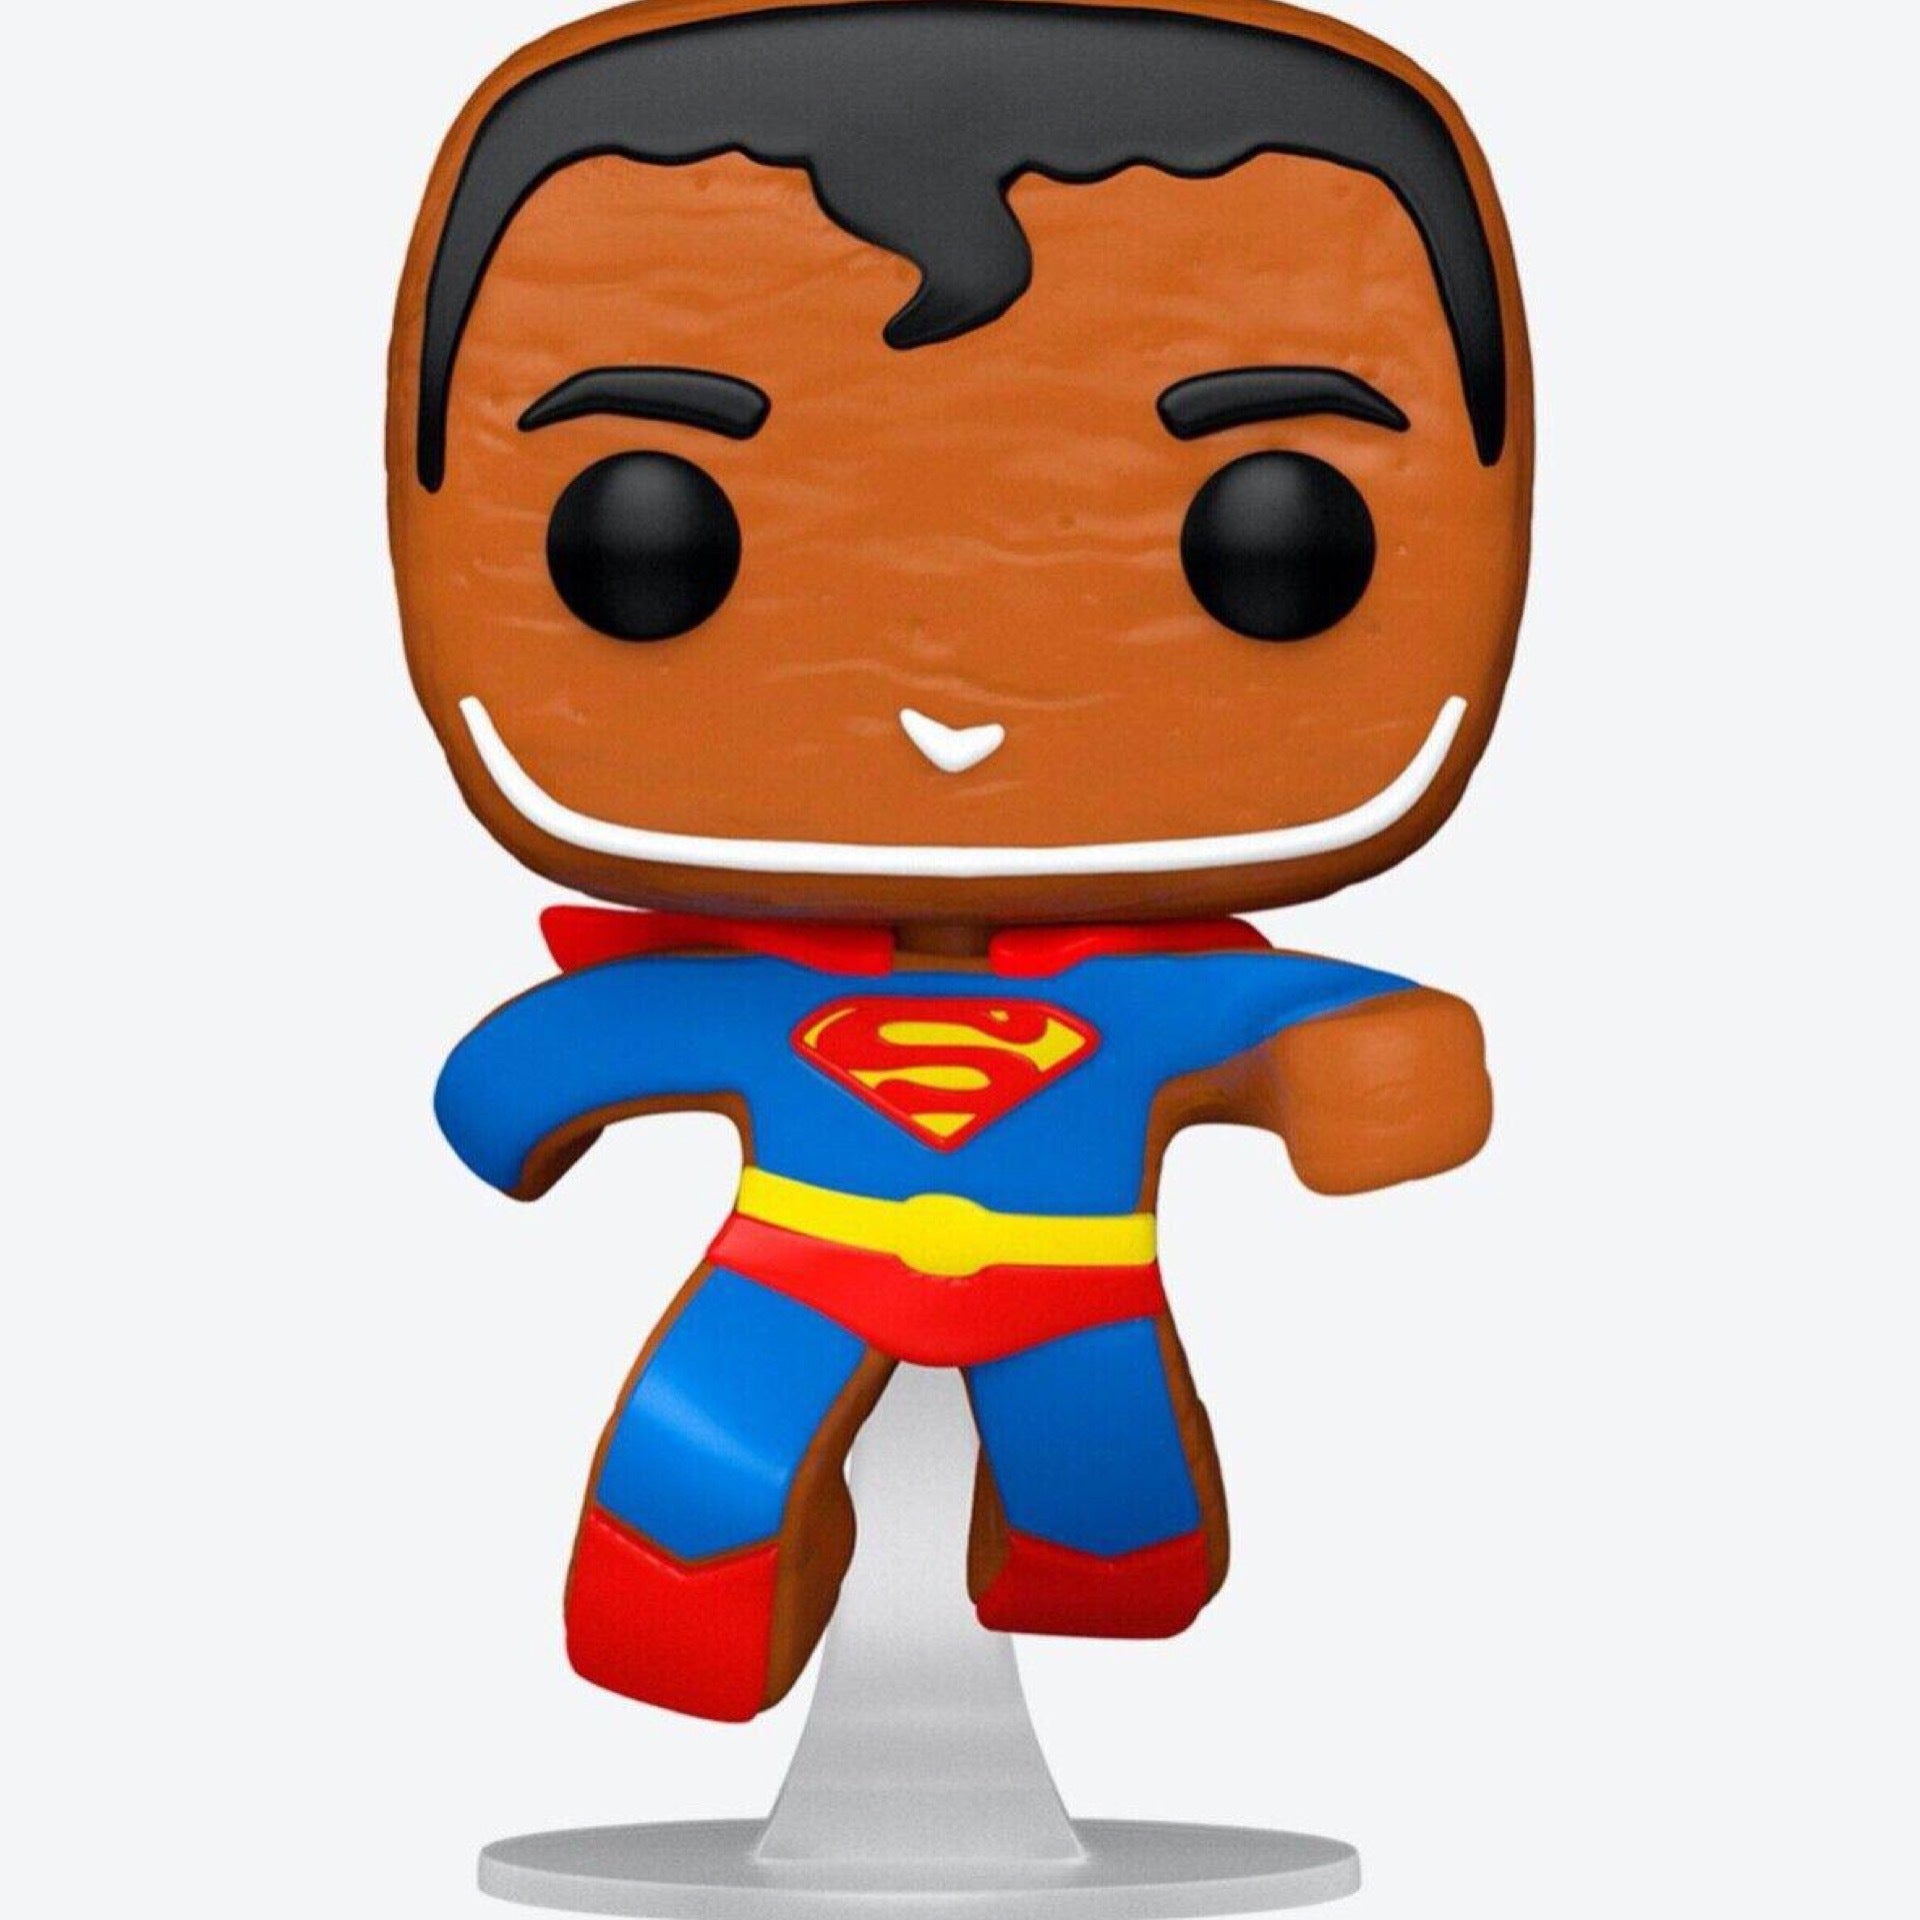 Figurine Superman / Super Heroes / Funko Pop Heroes 07